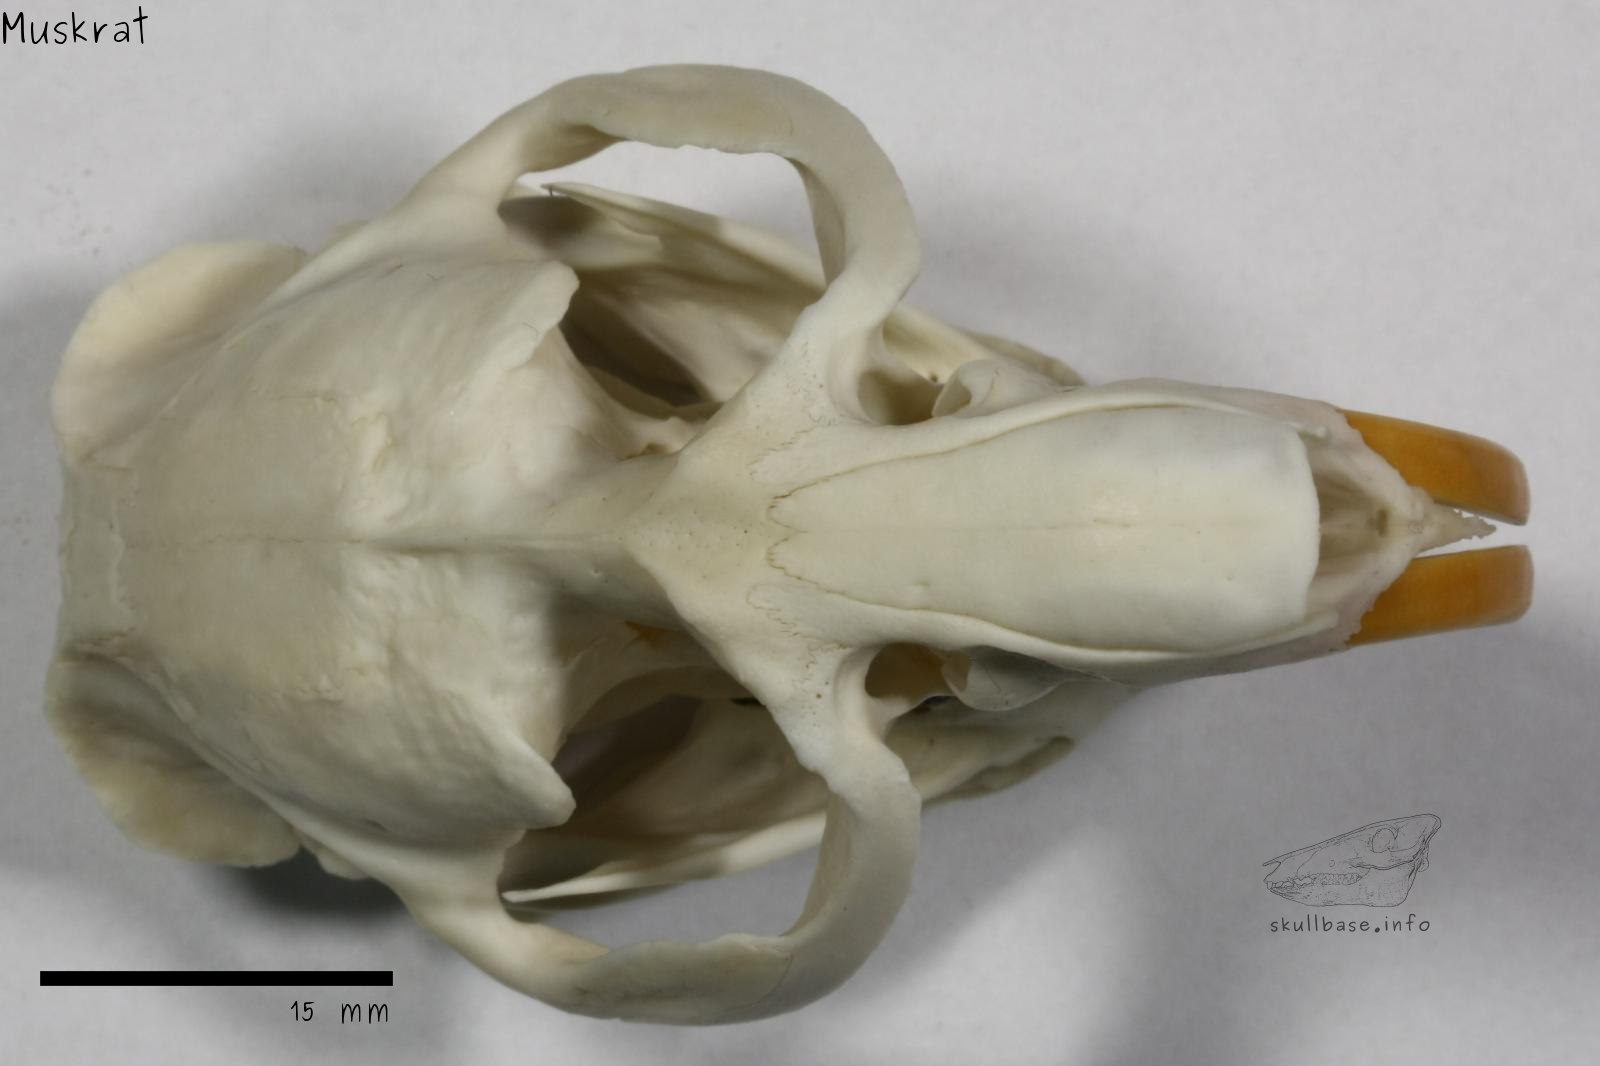 Muskrat (Ondatra zibethicus) skull dorsal view with jaw